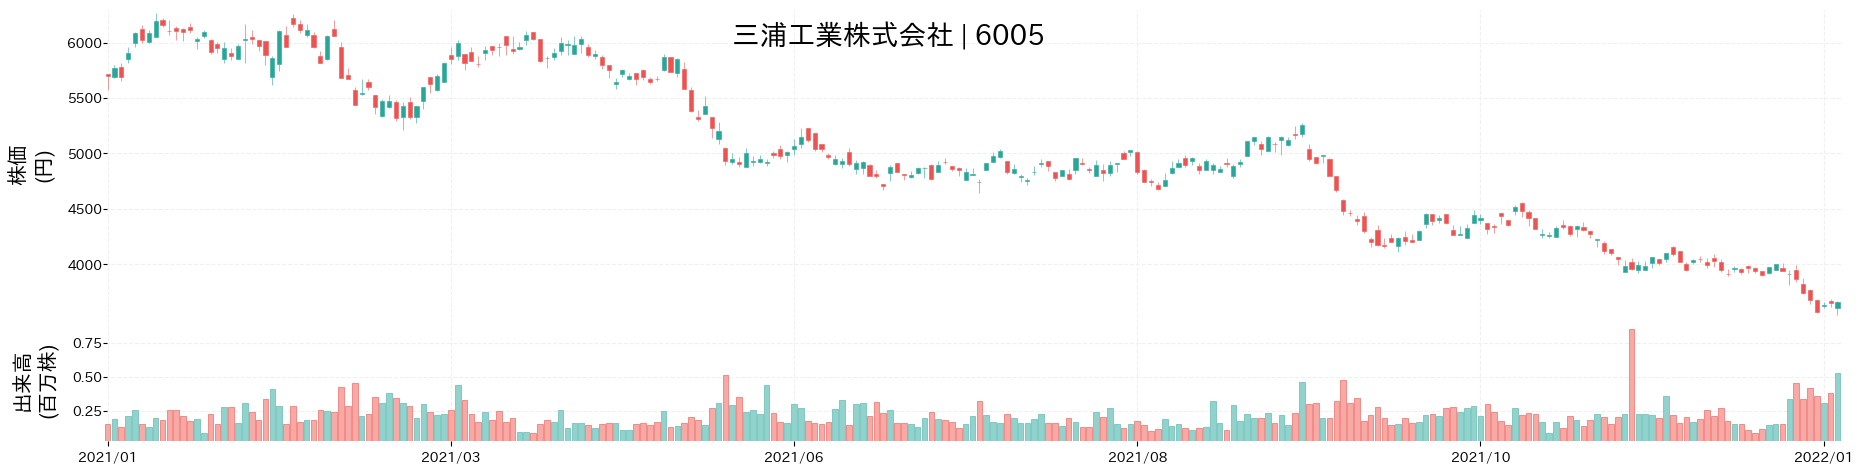 三浦工業の株価推移(2021)